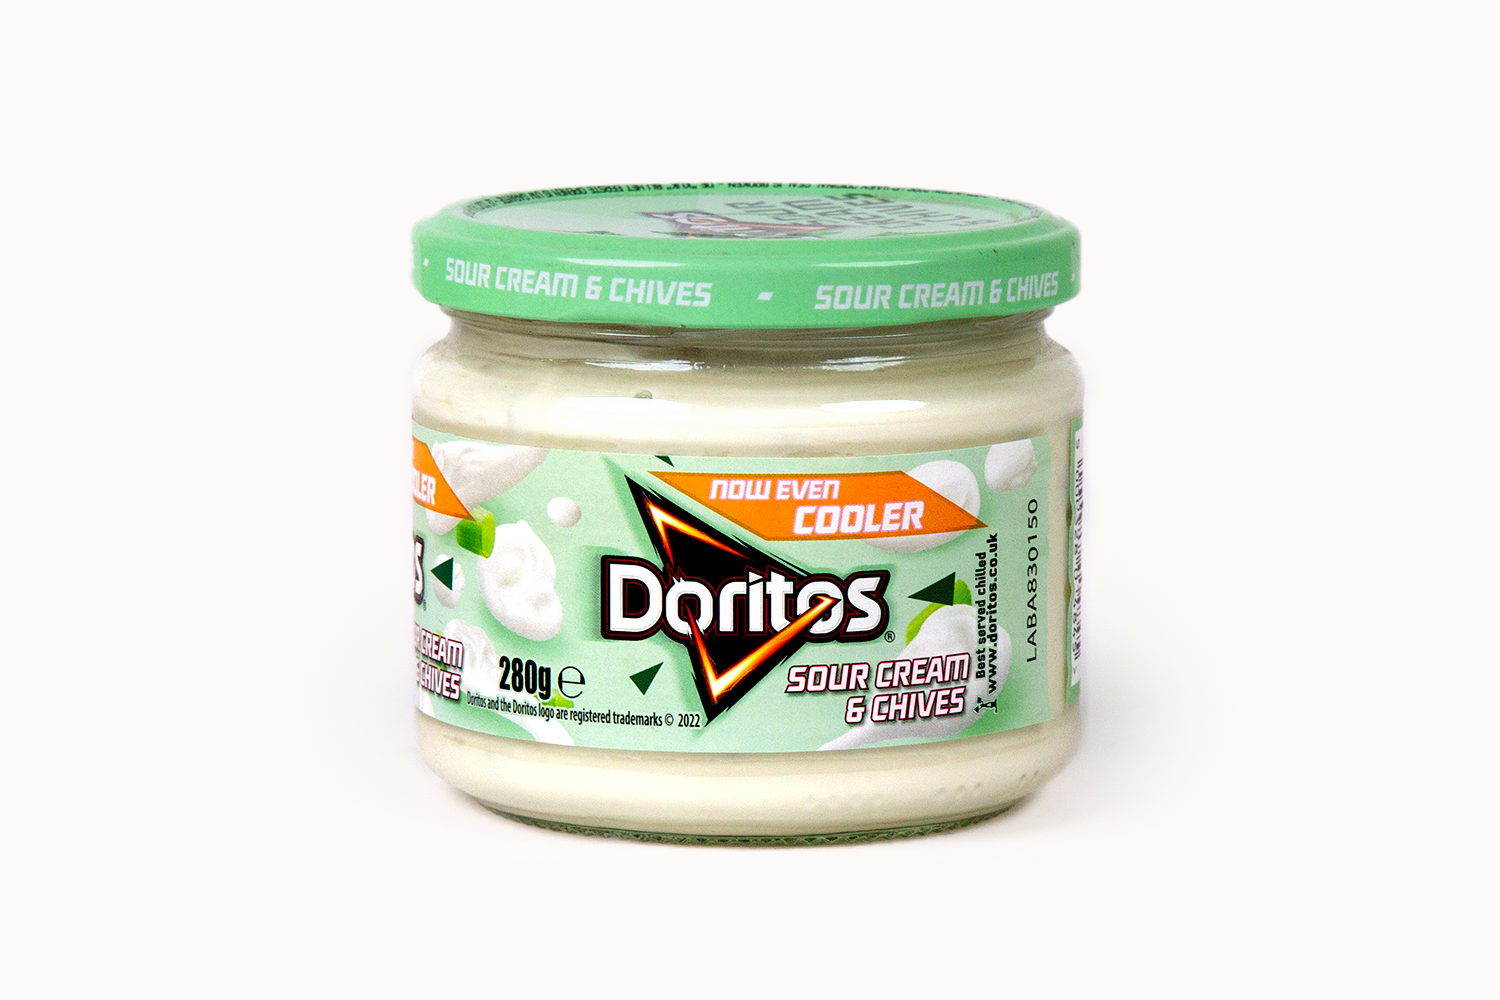 Doritos Sour Cream & Chives